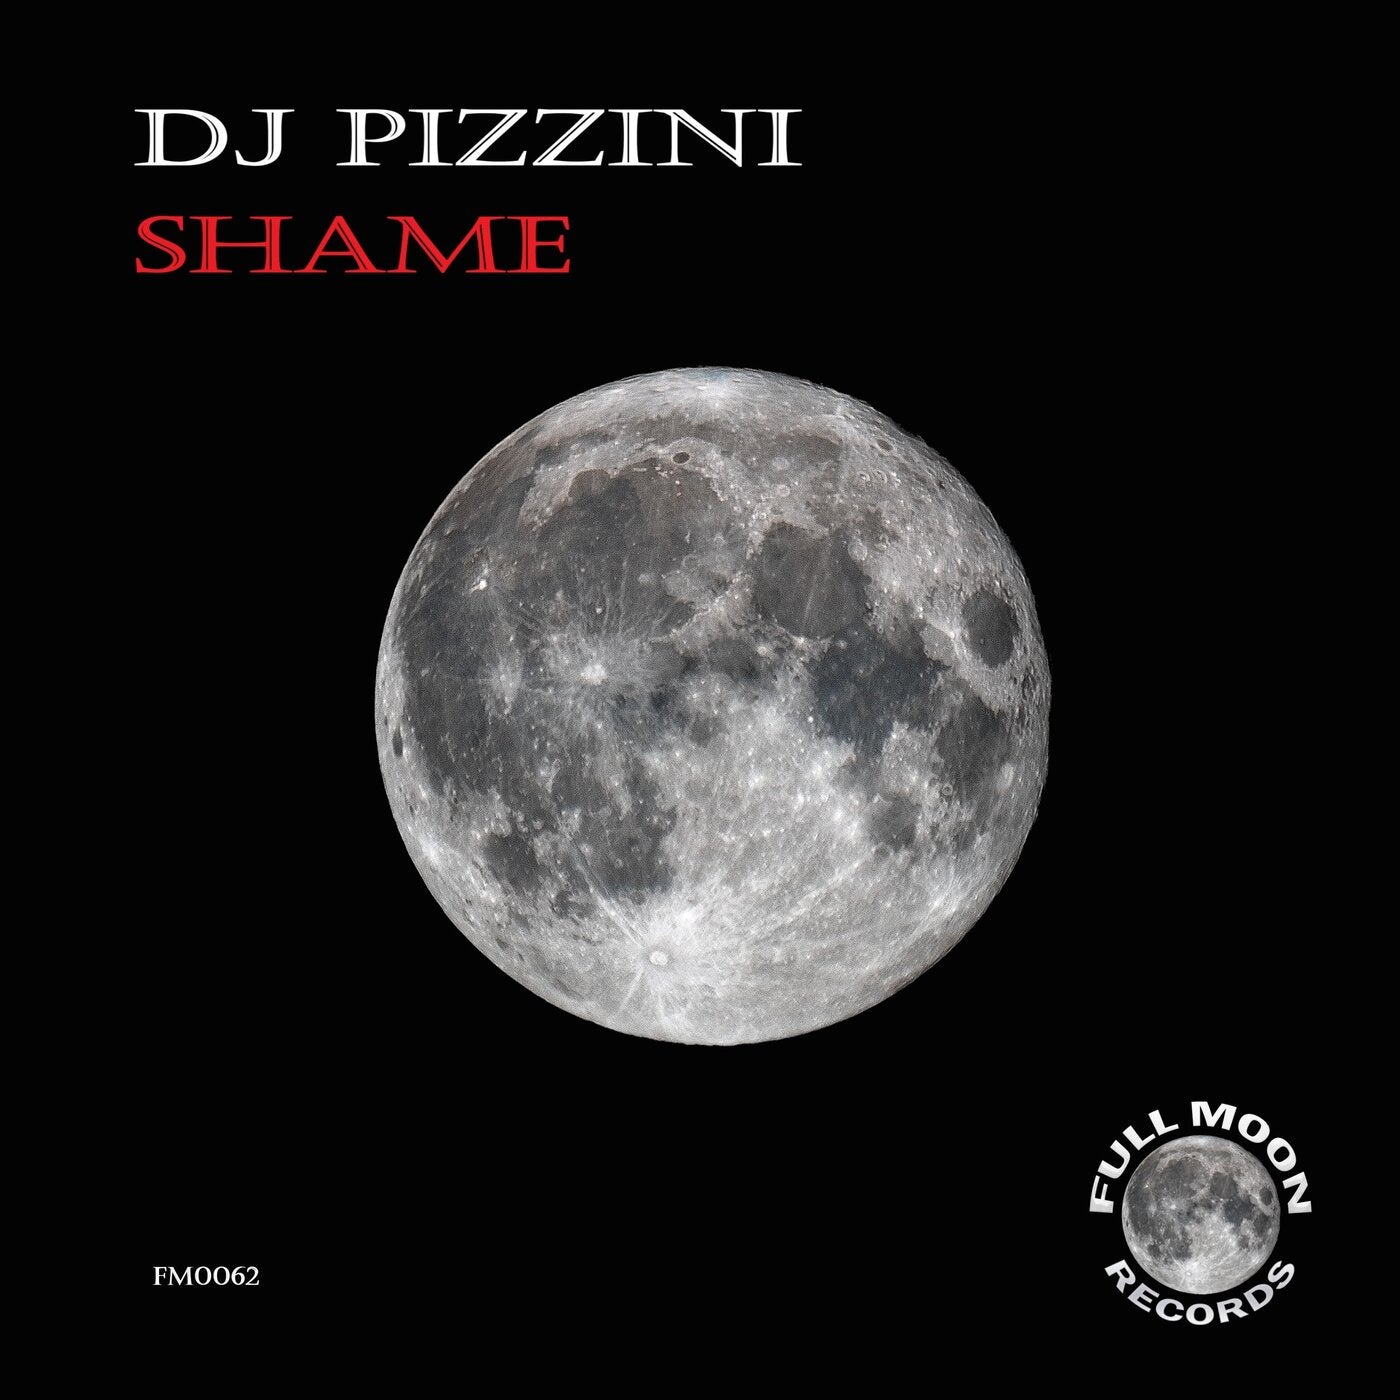 DJ PIZZINI - Shame [Full Moon Records]